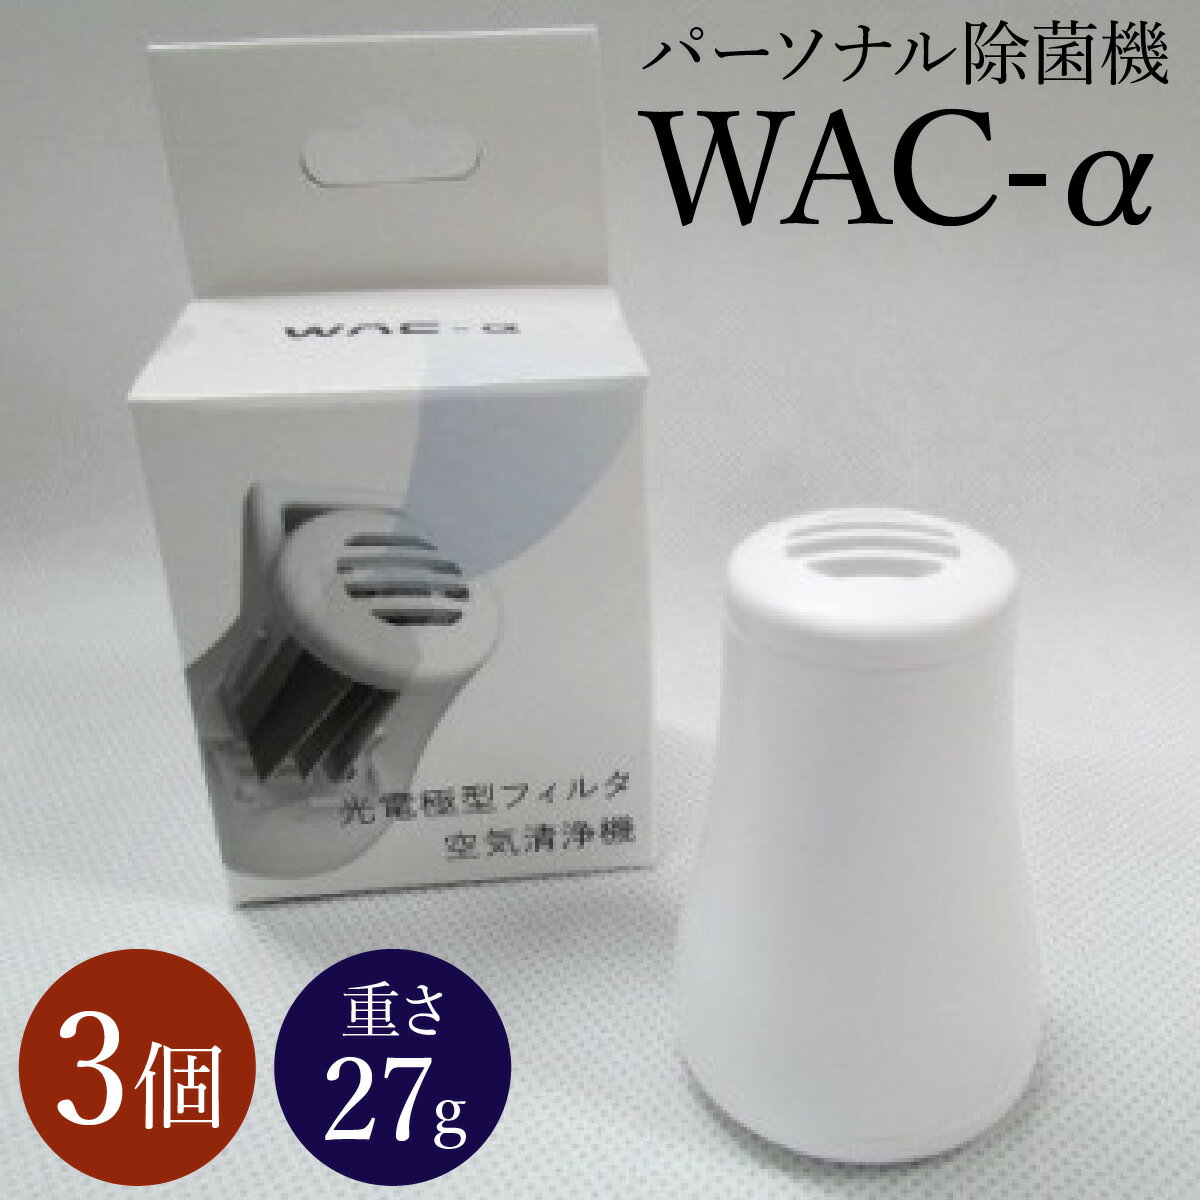 【ふるさと納税】パーソナル除菌機 WAC-α 3個セット 送